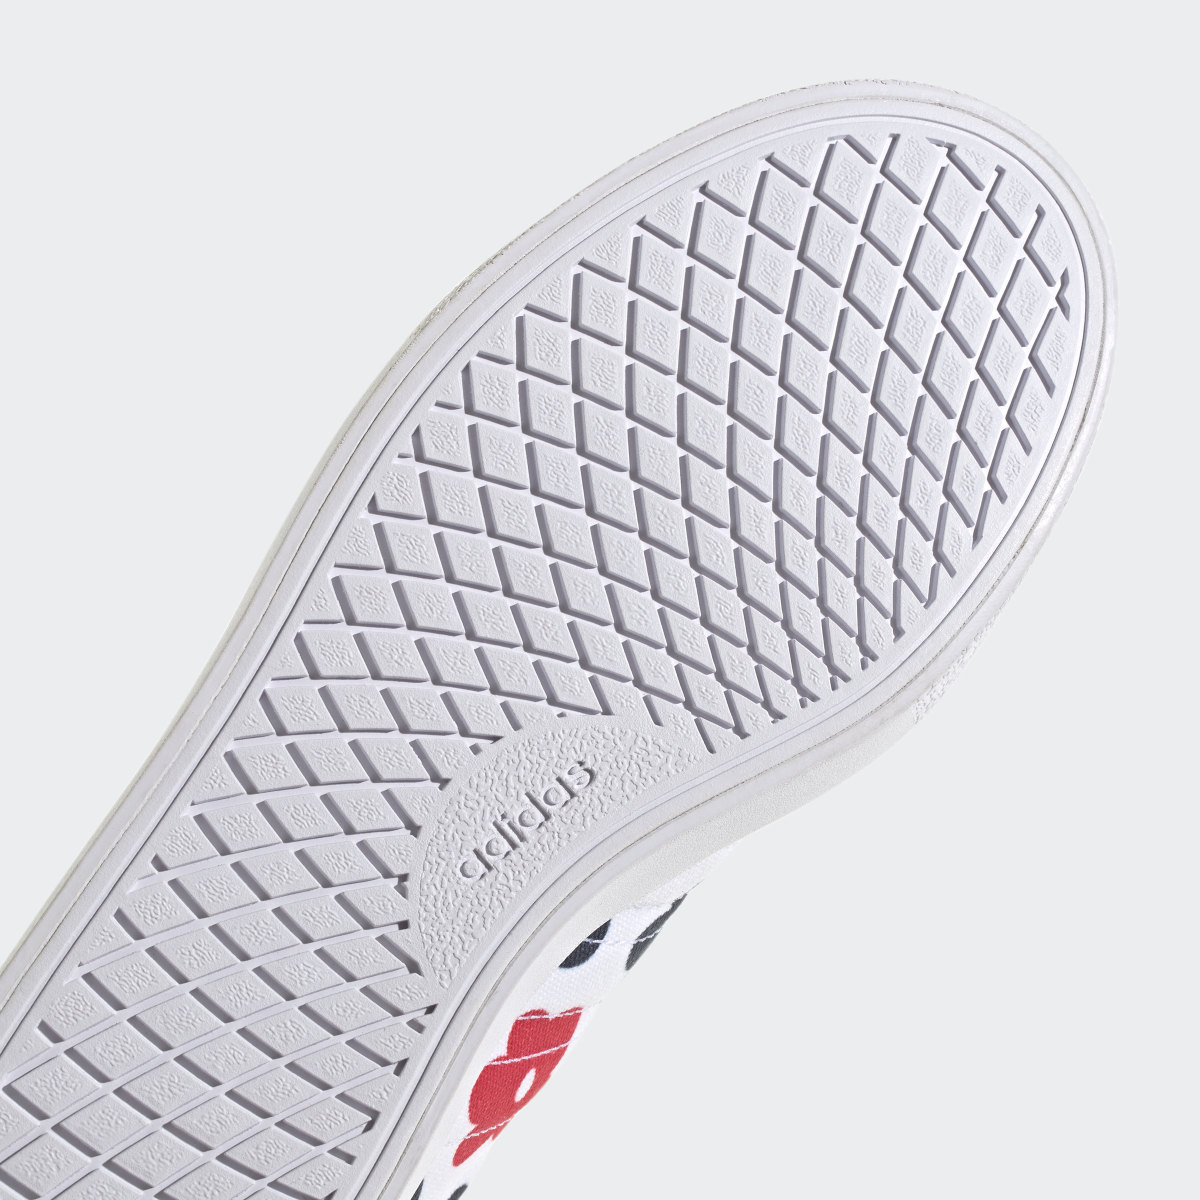 Adidas FARM Rio x Vulc Raid3r Lifestyle Skateboarding Logo Branding Shoes. 9